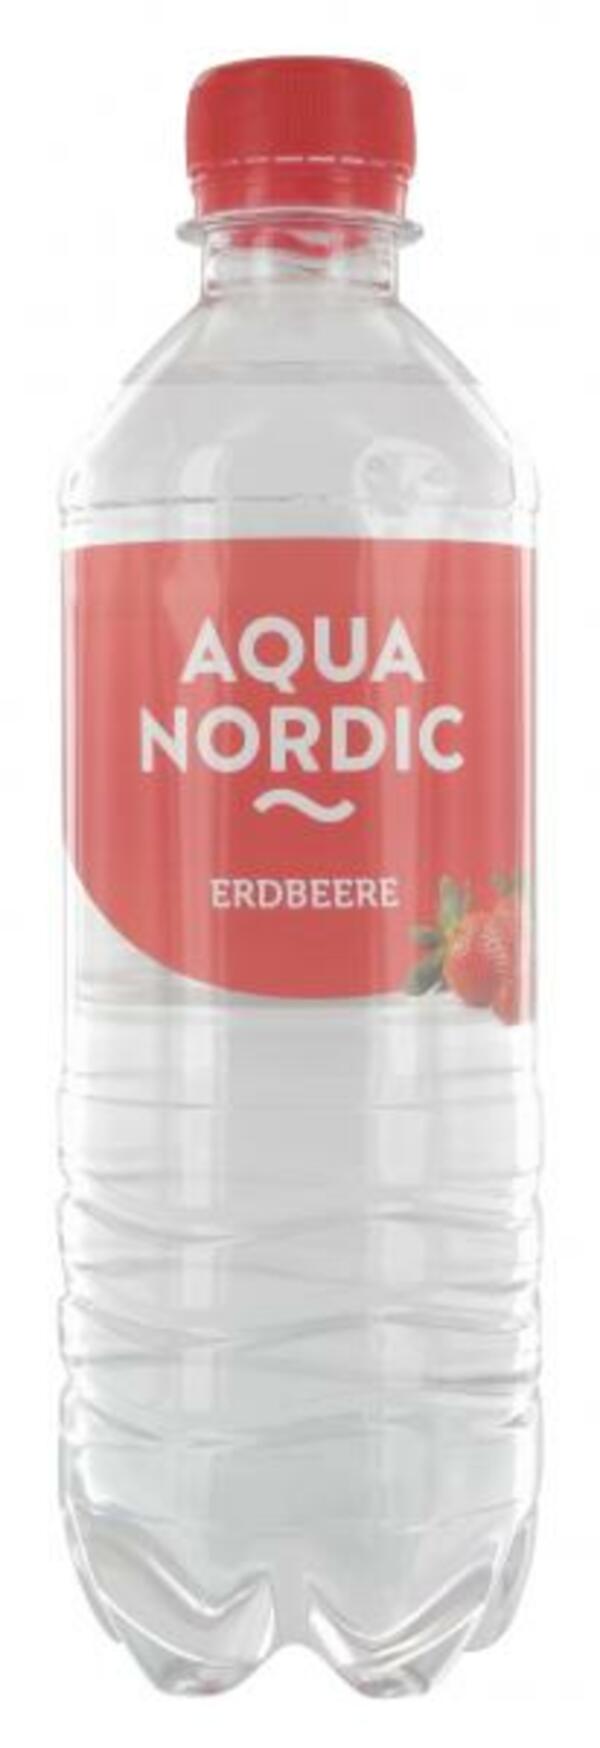 Bild 1 von Aqua Nordic Erfrischungsgetränk Erdbeere (Einweg)